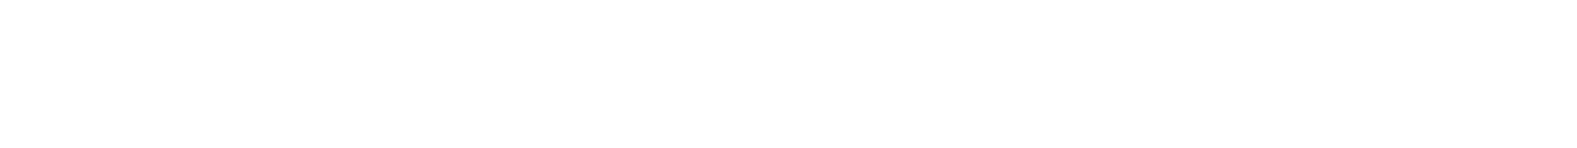 Johnson & Johnson Logo groß für dunkle Hintergründe (transparentes PNG)